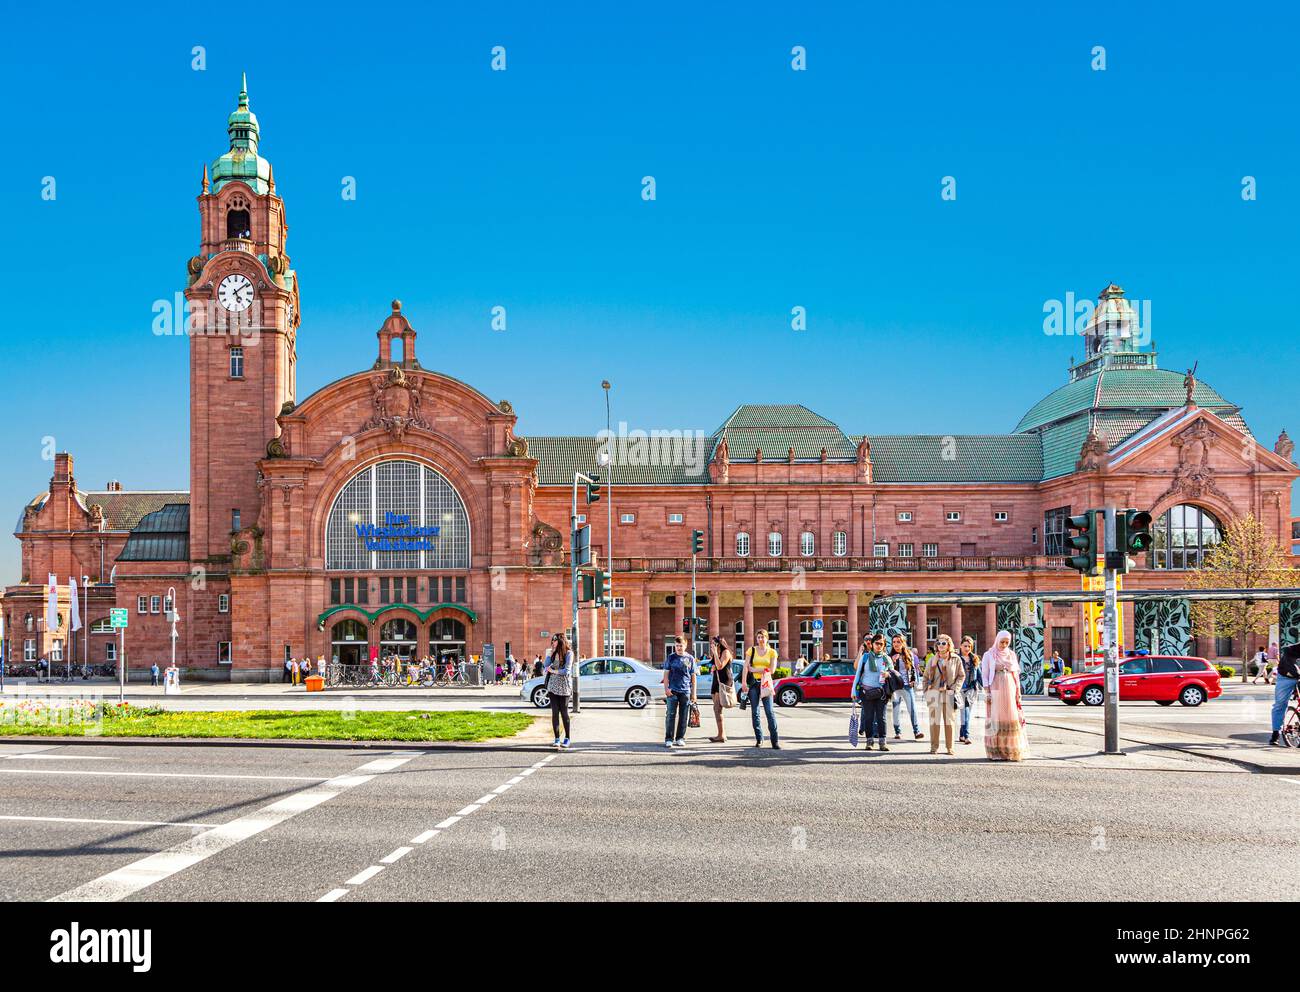 Berühmter klassizistischer alter Bahnhof in Wiesbaden mit Menschen Stockfoto